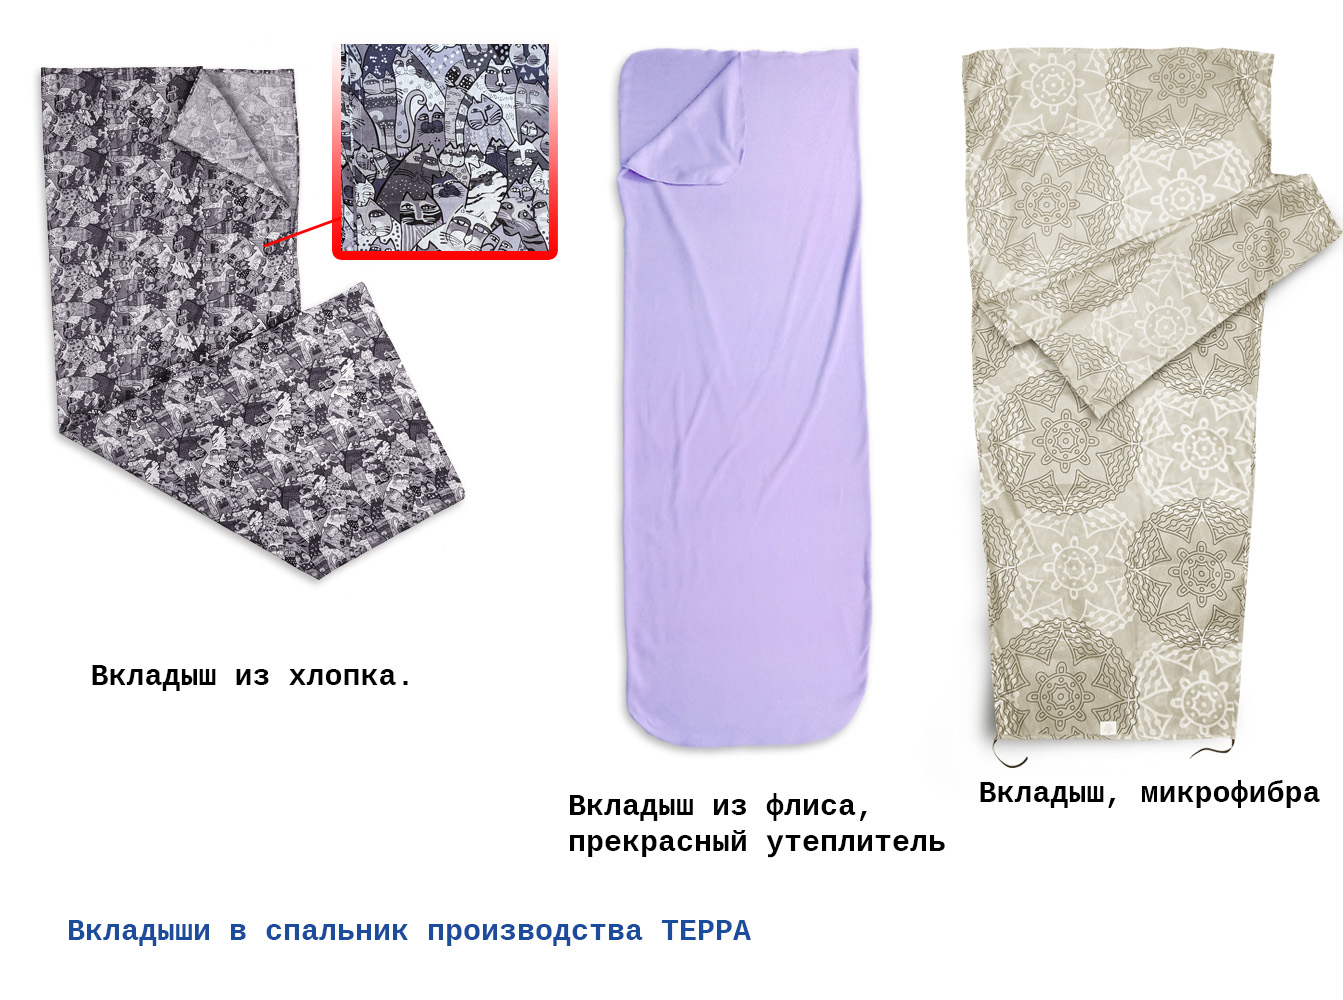 Флисовые, хб, микрофибра Вкладыши в спальные мешки производства ТЕРРА